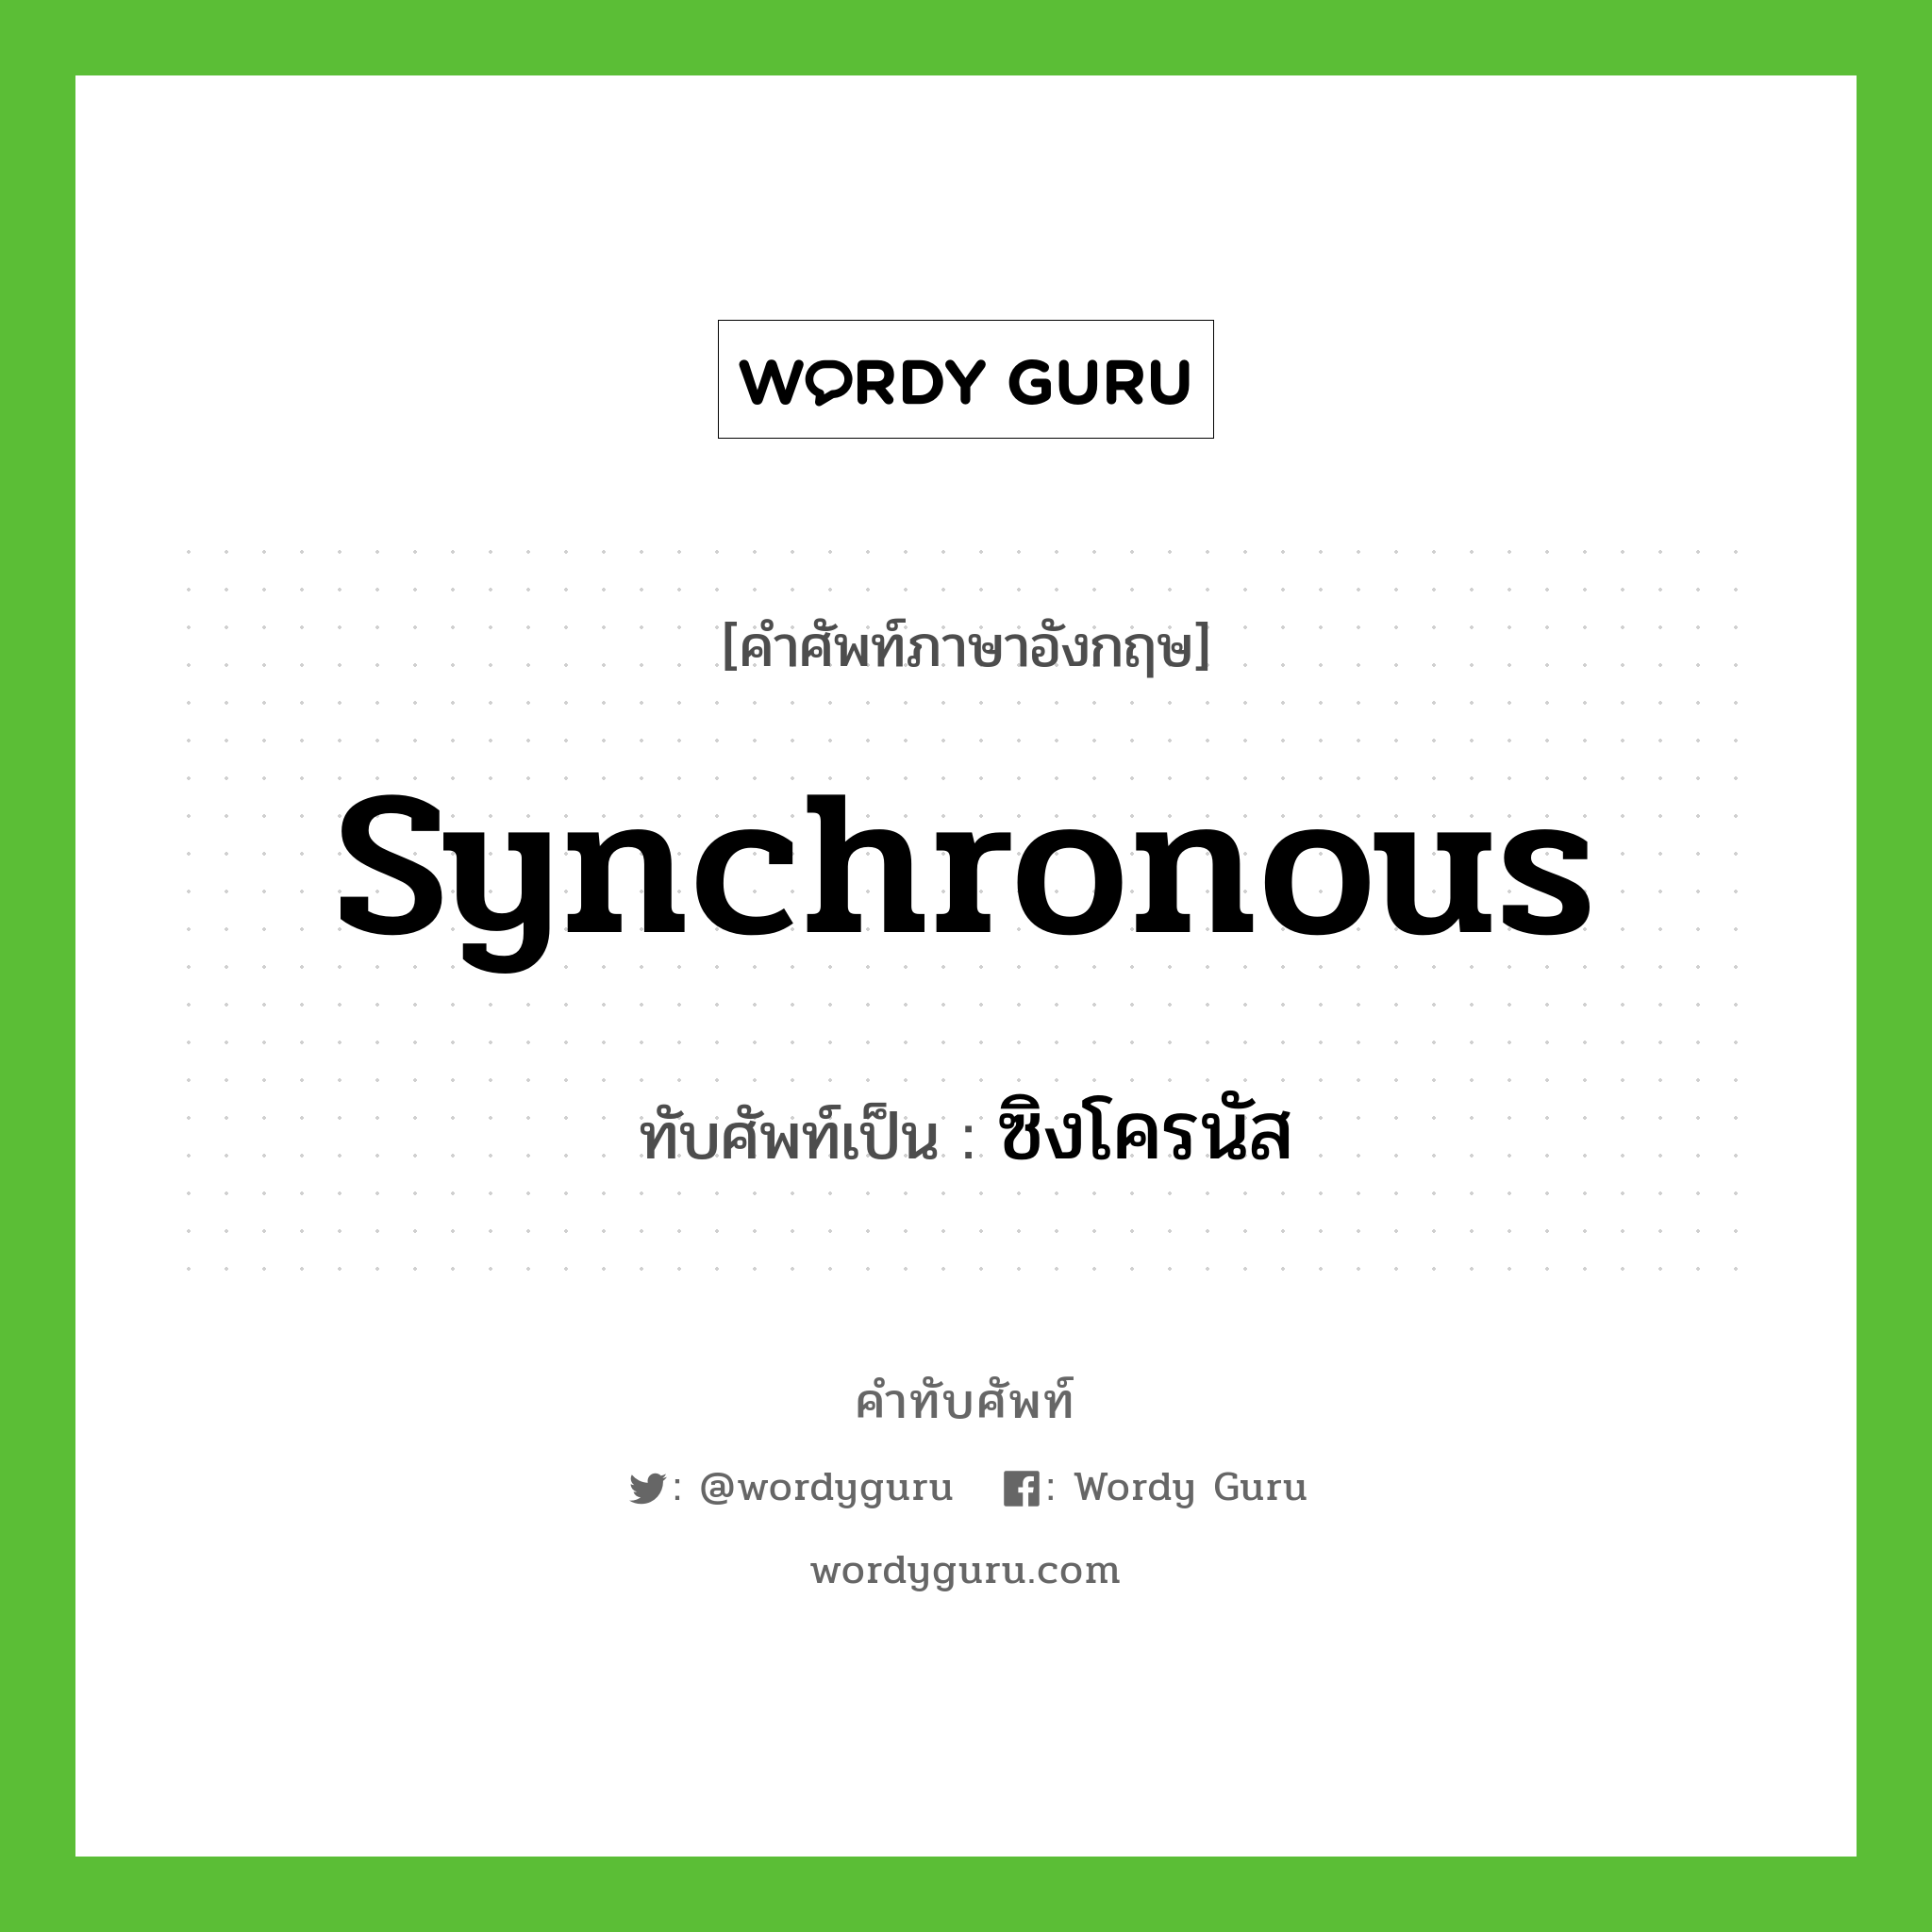 ซิงโครนัส เขียนอย่างไร?, คำศัพท์ภาษาอังกฤษ ซิงโครนัส ทับศัพท์เป็น synchronous